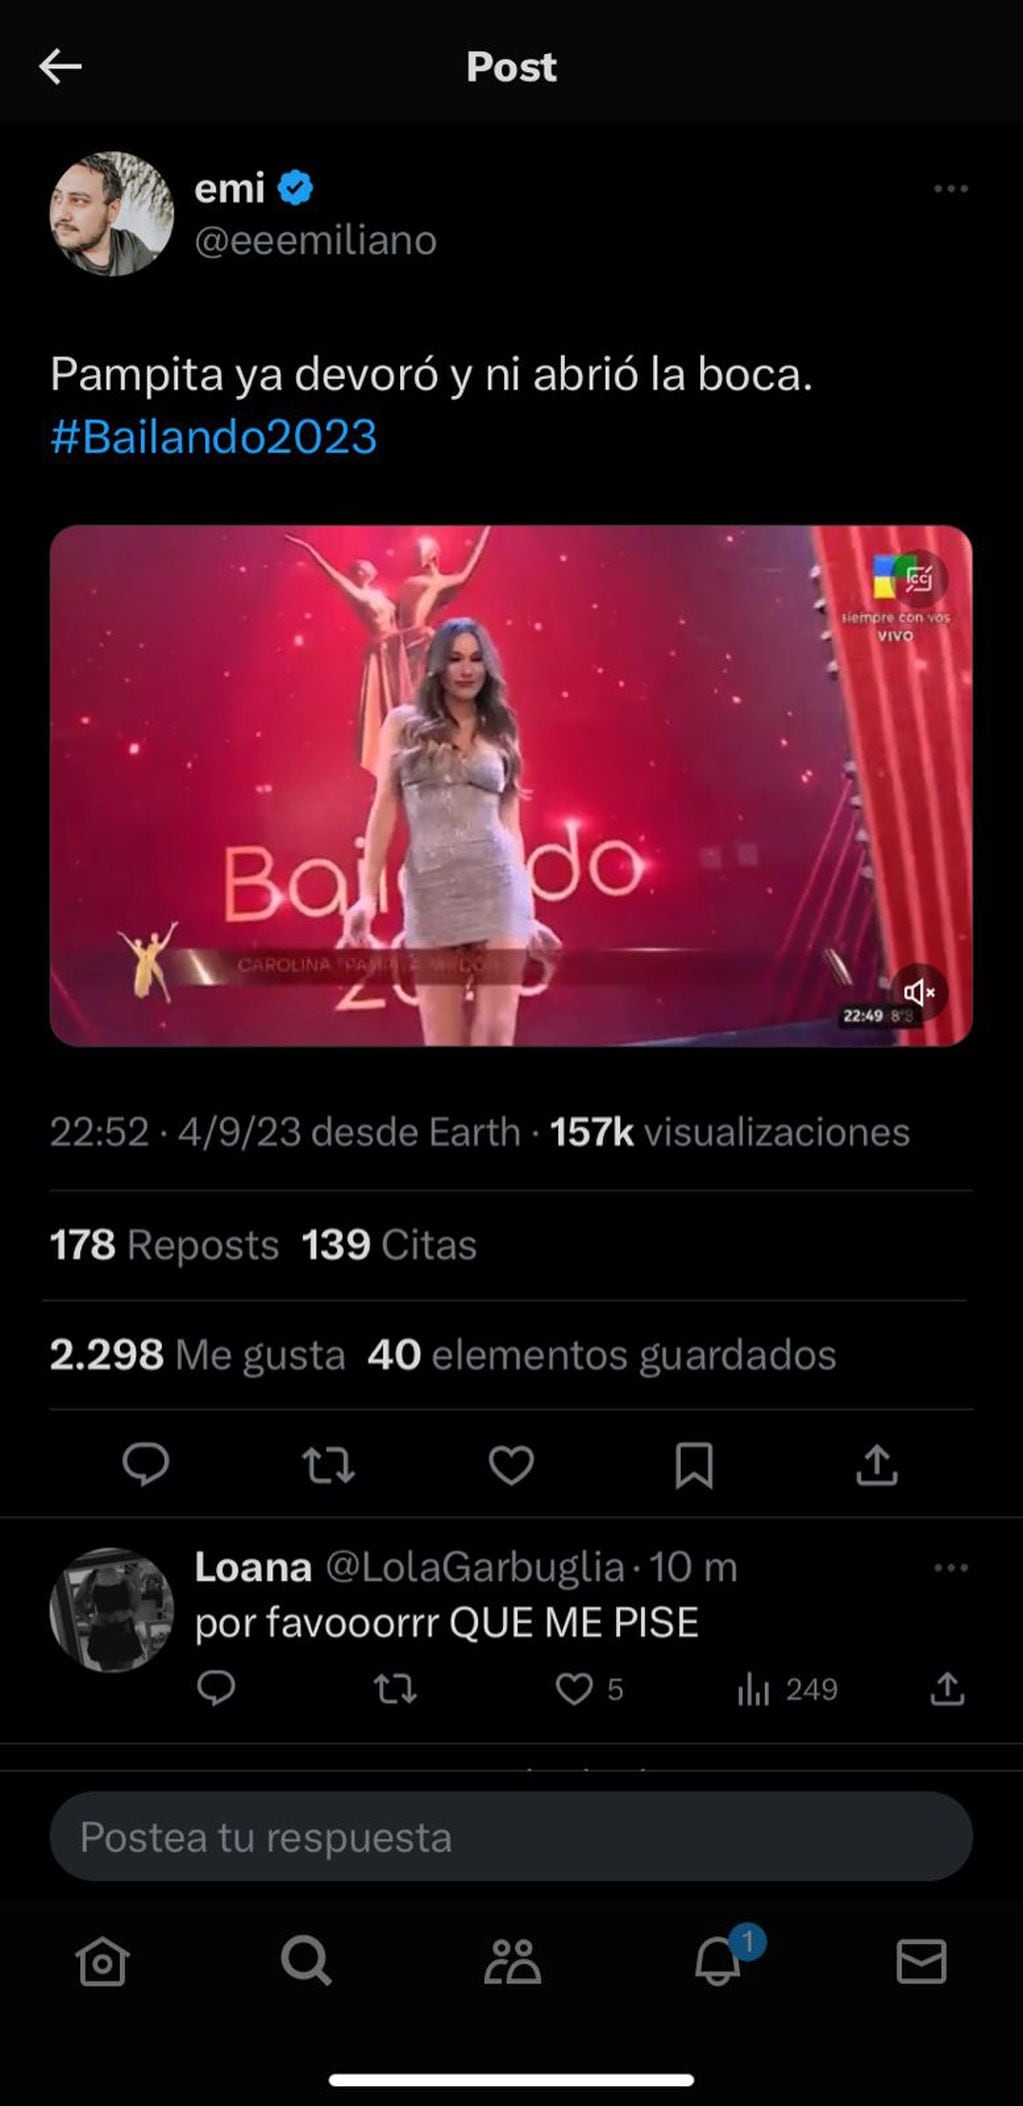 Pampita fue lo más comentado en Twitter tras la apertura del Bailando 2023. Captura de pantalla.